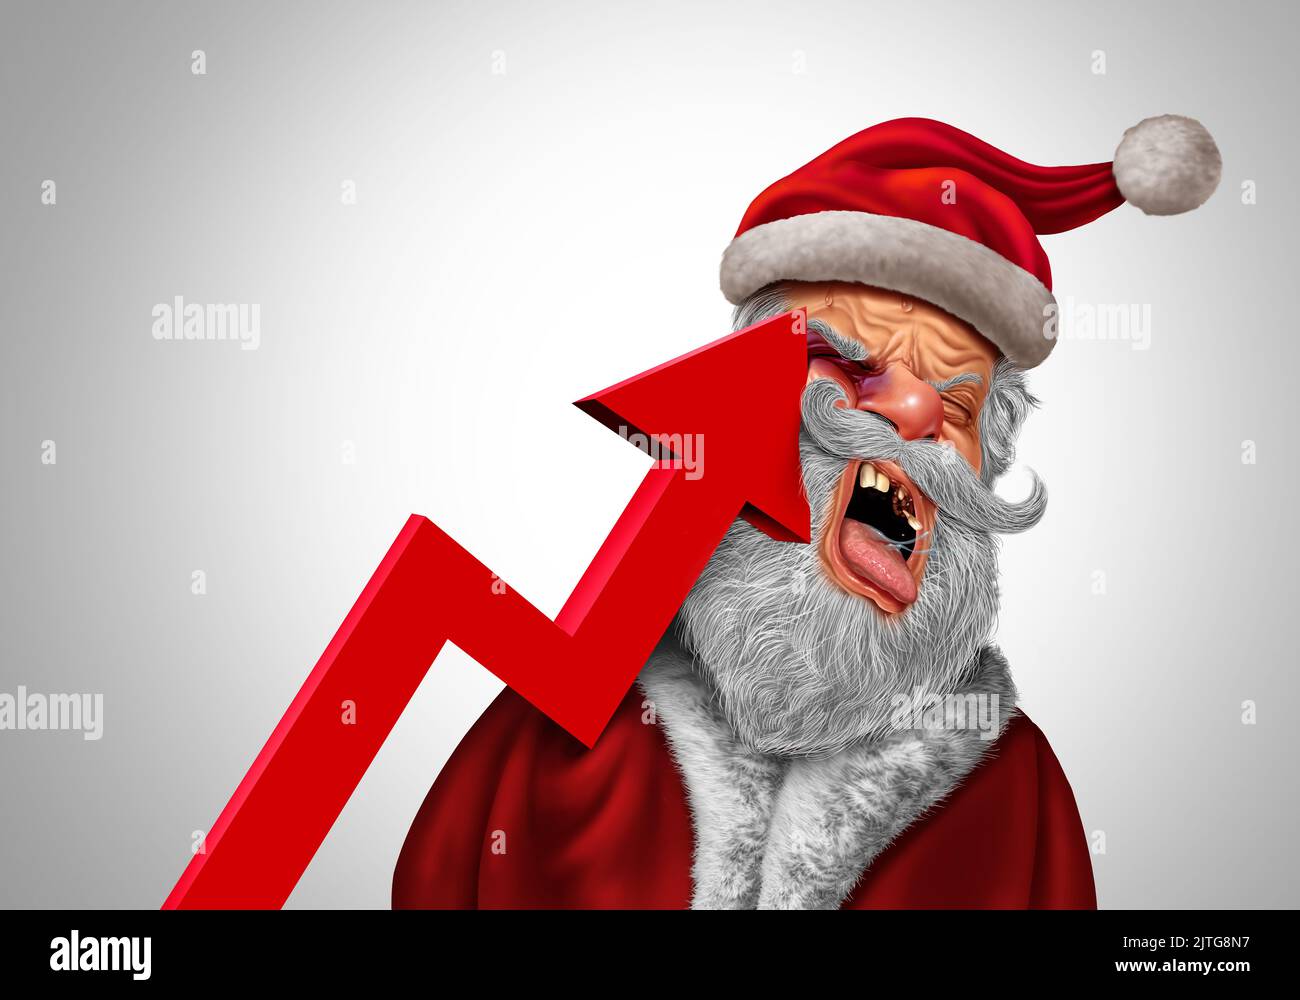 Das Konzept der Weihnachtsinflationsschmerzen, da der Weihnachtsmann von einem nach oben schiefen Pfeil der Finanzchart, der steigende Verbraucherpreise darstellt, hart getroffen wird Stockfoto